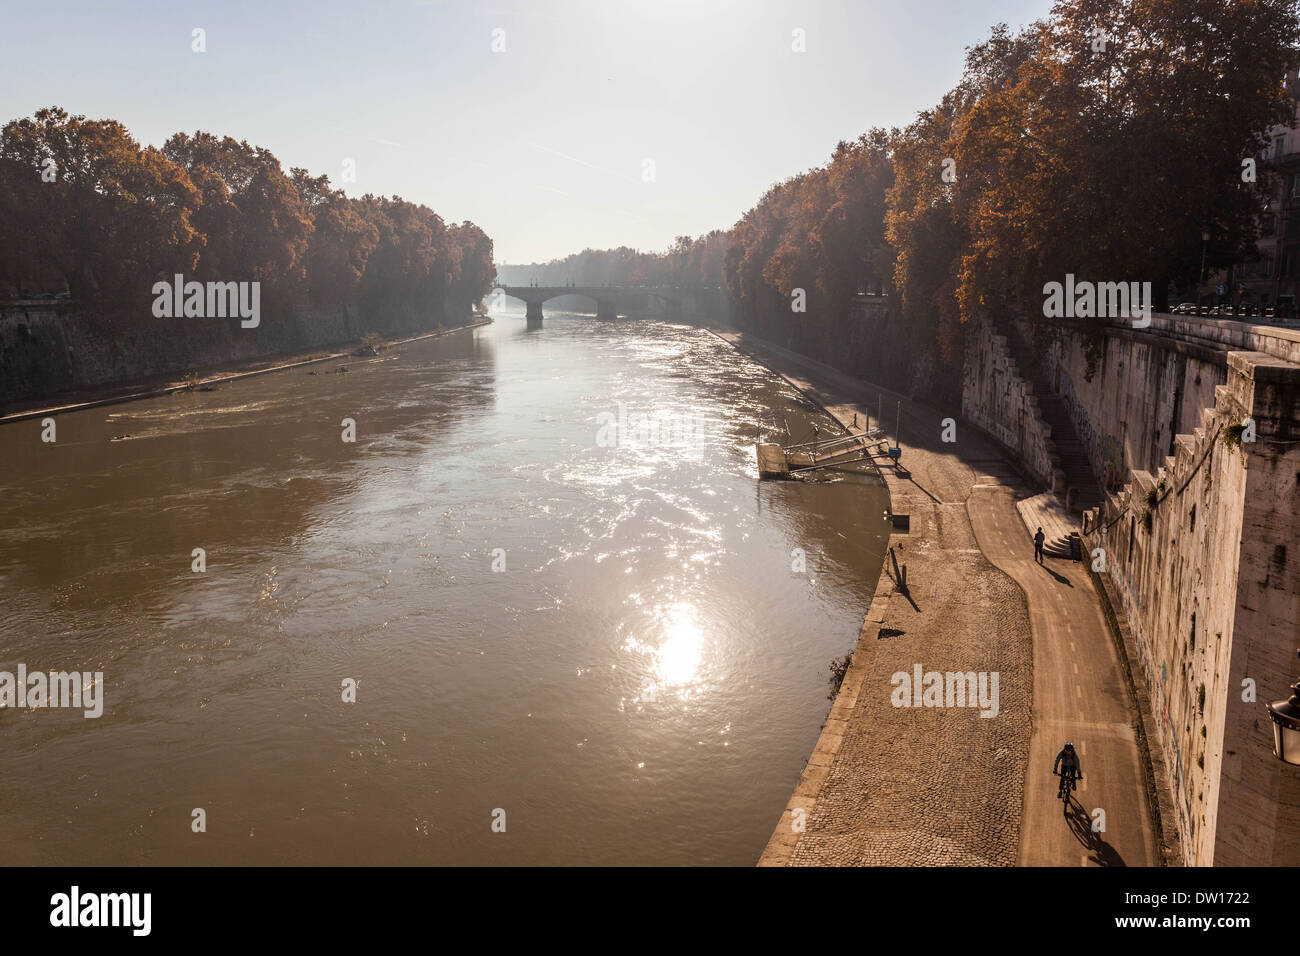 Tiber River in Rome Italy. Stock Photo